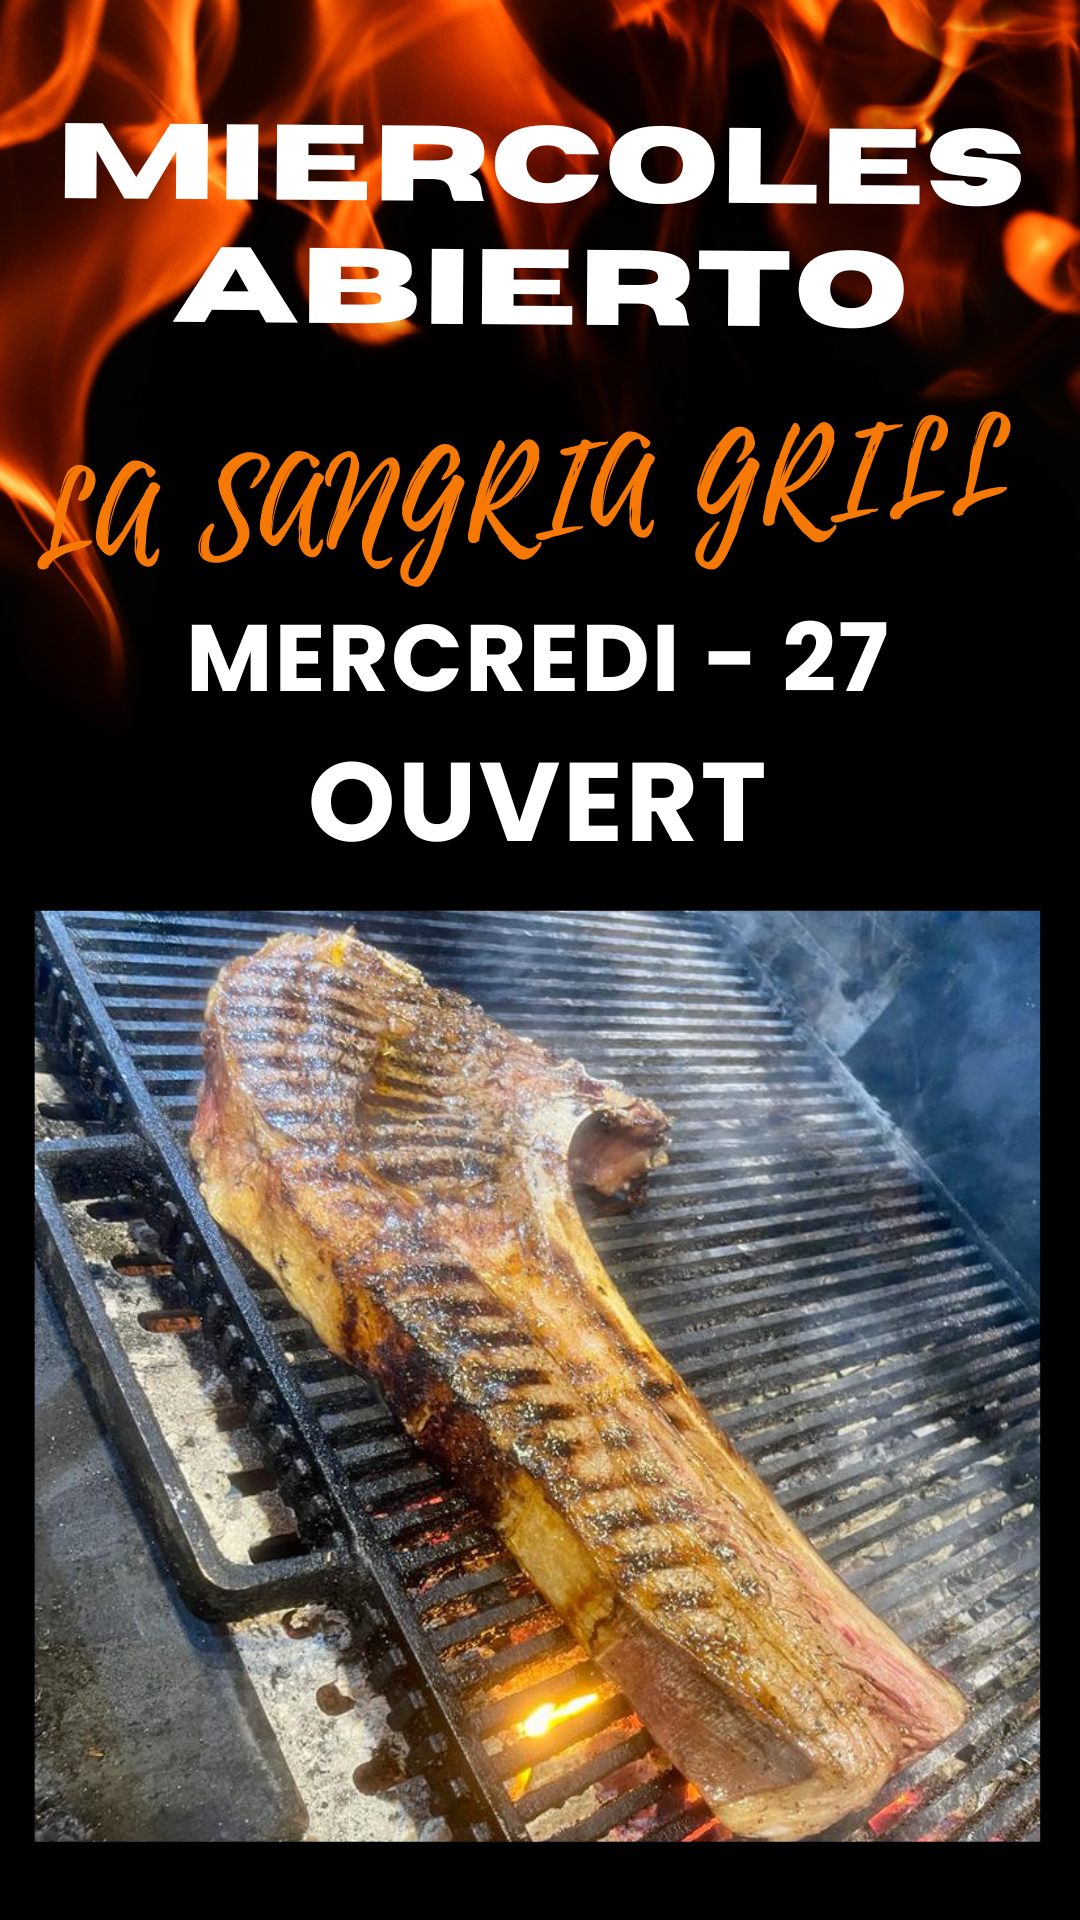 Ce mercredi 27 mars, au Restaurant Grill La Sangria, nous sommes ouverts. Réservez votre table maintenant.